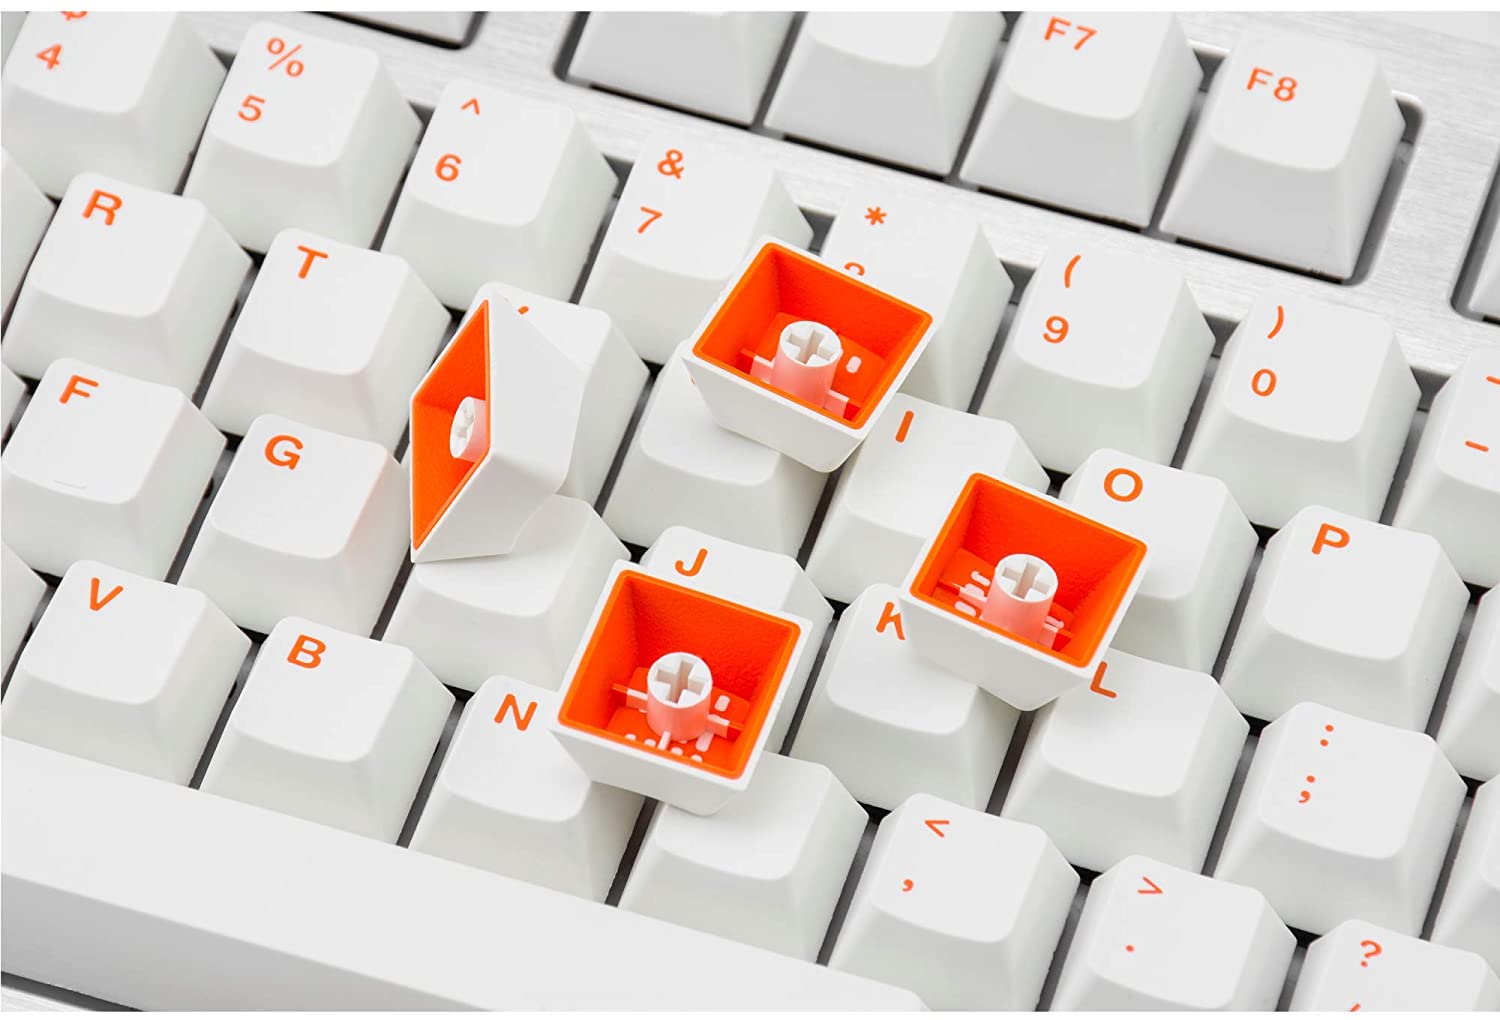 Keycap bàn phím cơ có đáng chú ý không?